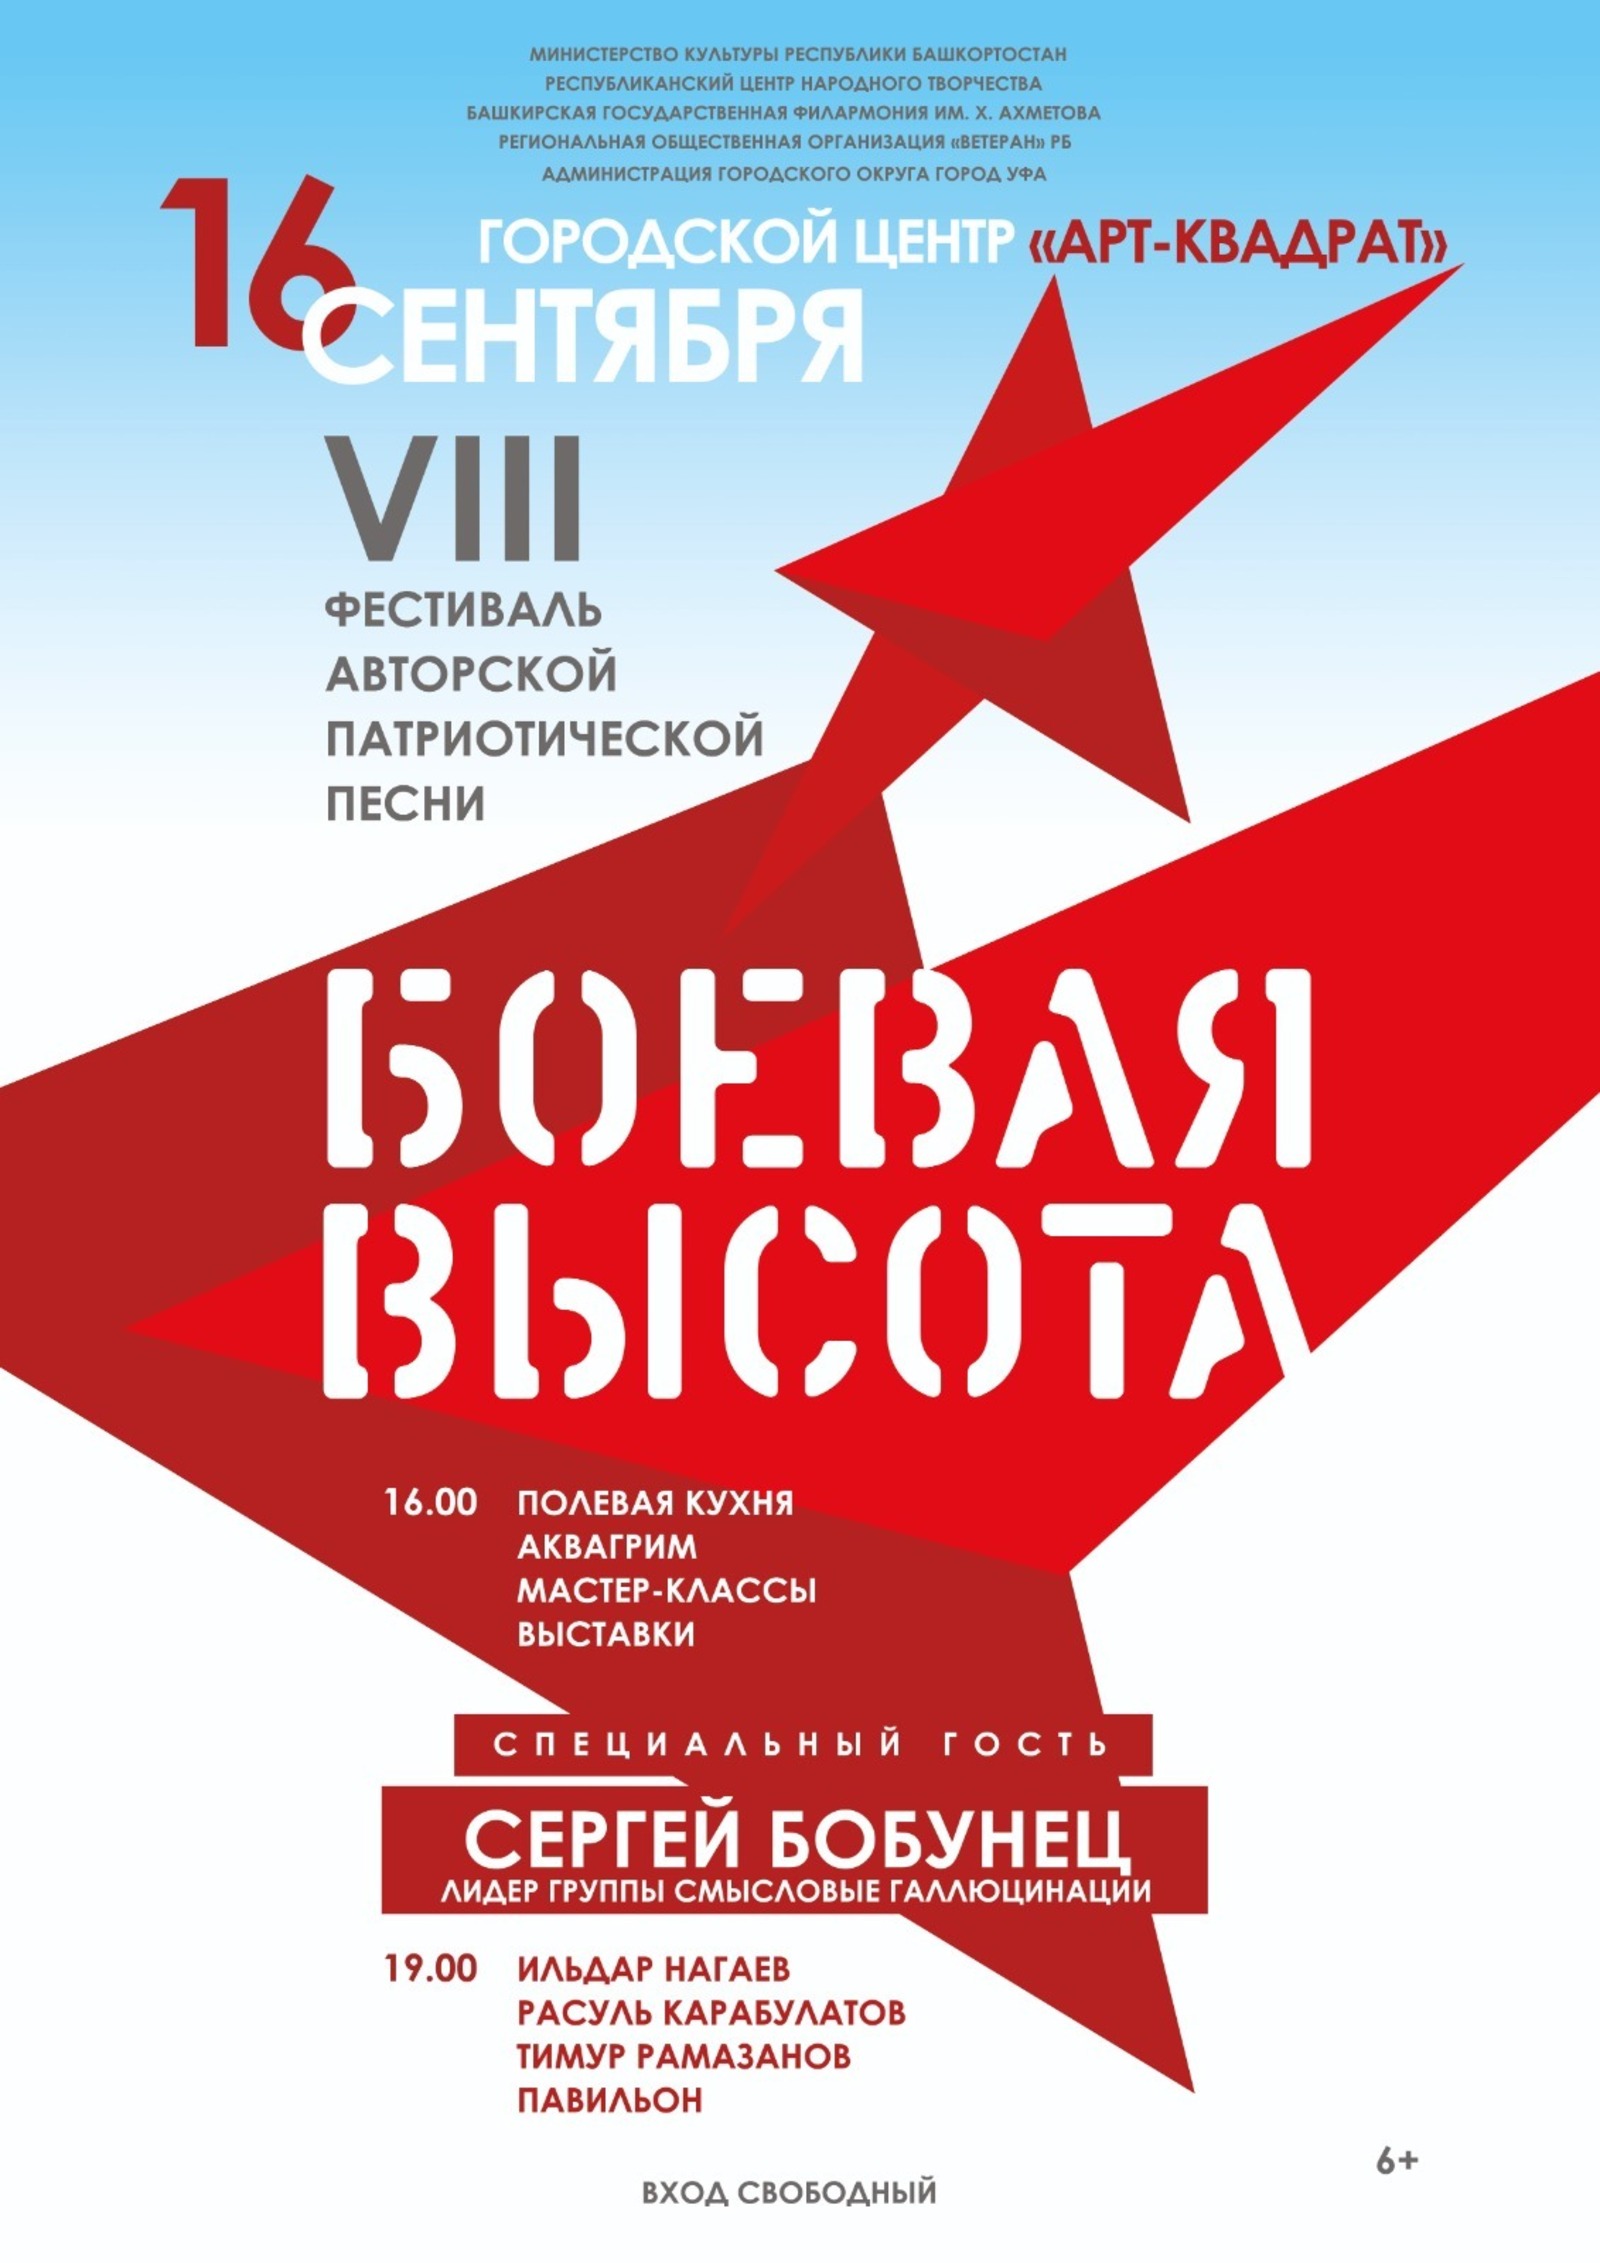 В Уфе пройдет VIII Республиканский фестиваль авторской патриотической песни «Боевая высота»